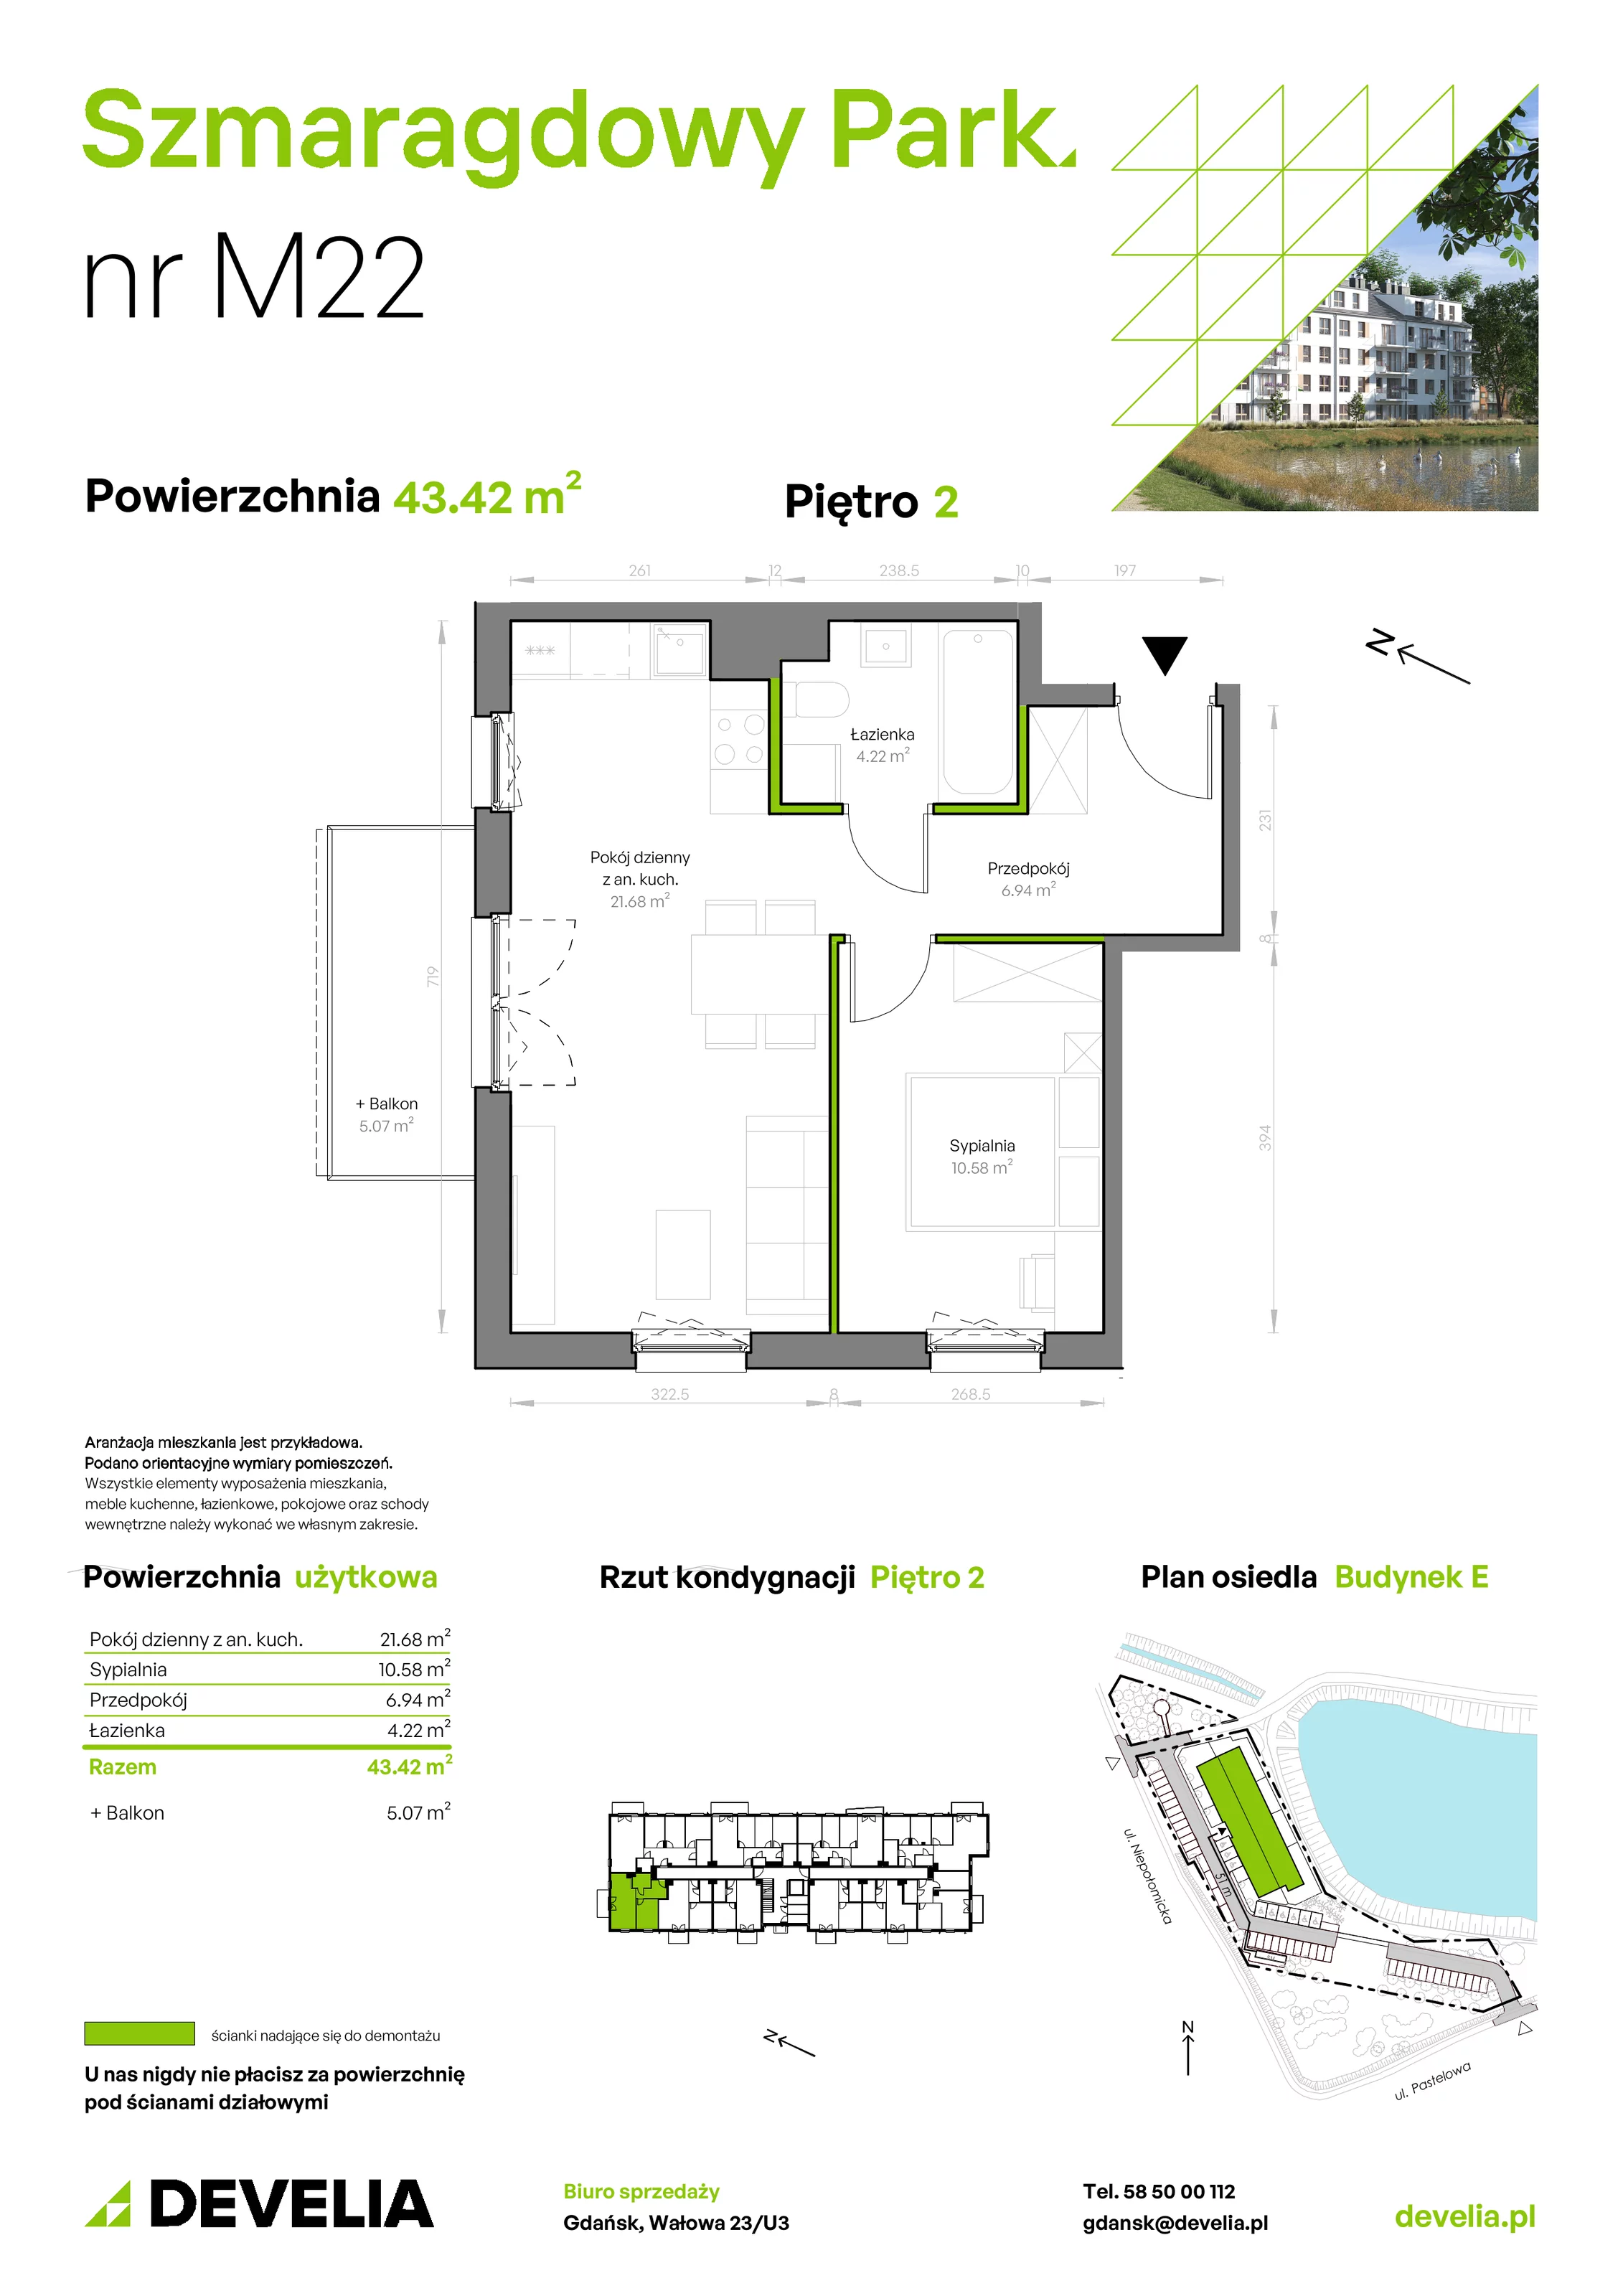 Mieszkanie 43,42 m², piętro 2, oferta nr E/022, Szmaragdowy Park, Gdańsk, Orunia Górna-Gdańsk Południe, Łostowice, ul. Topazowa 2